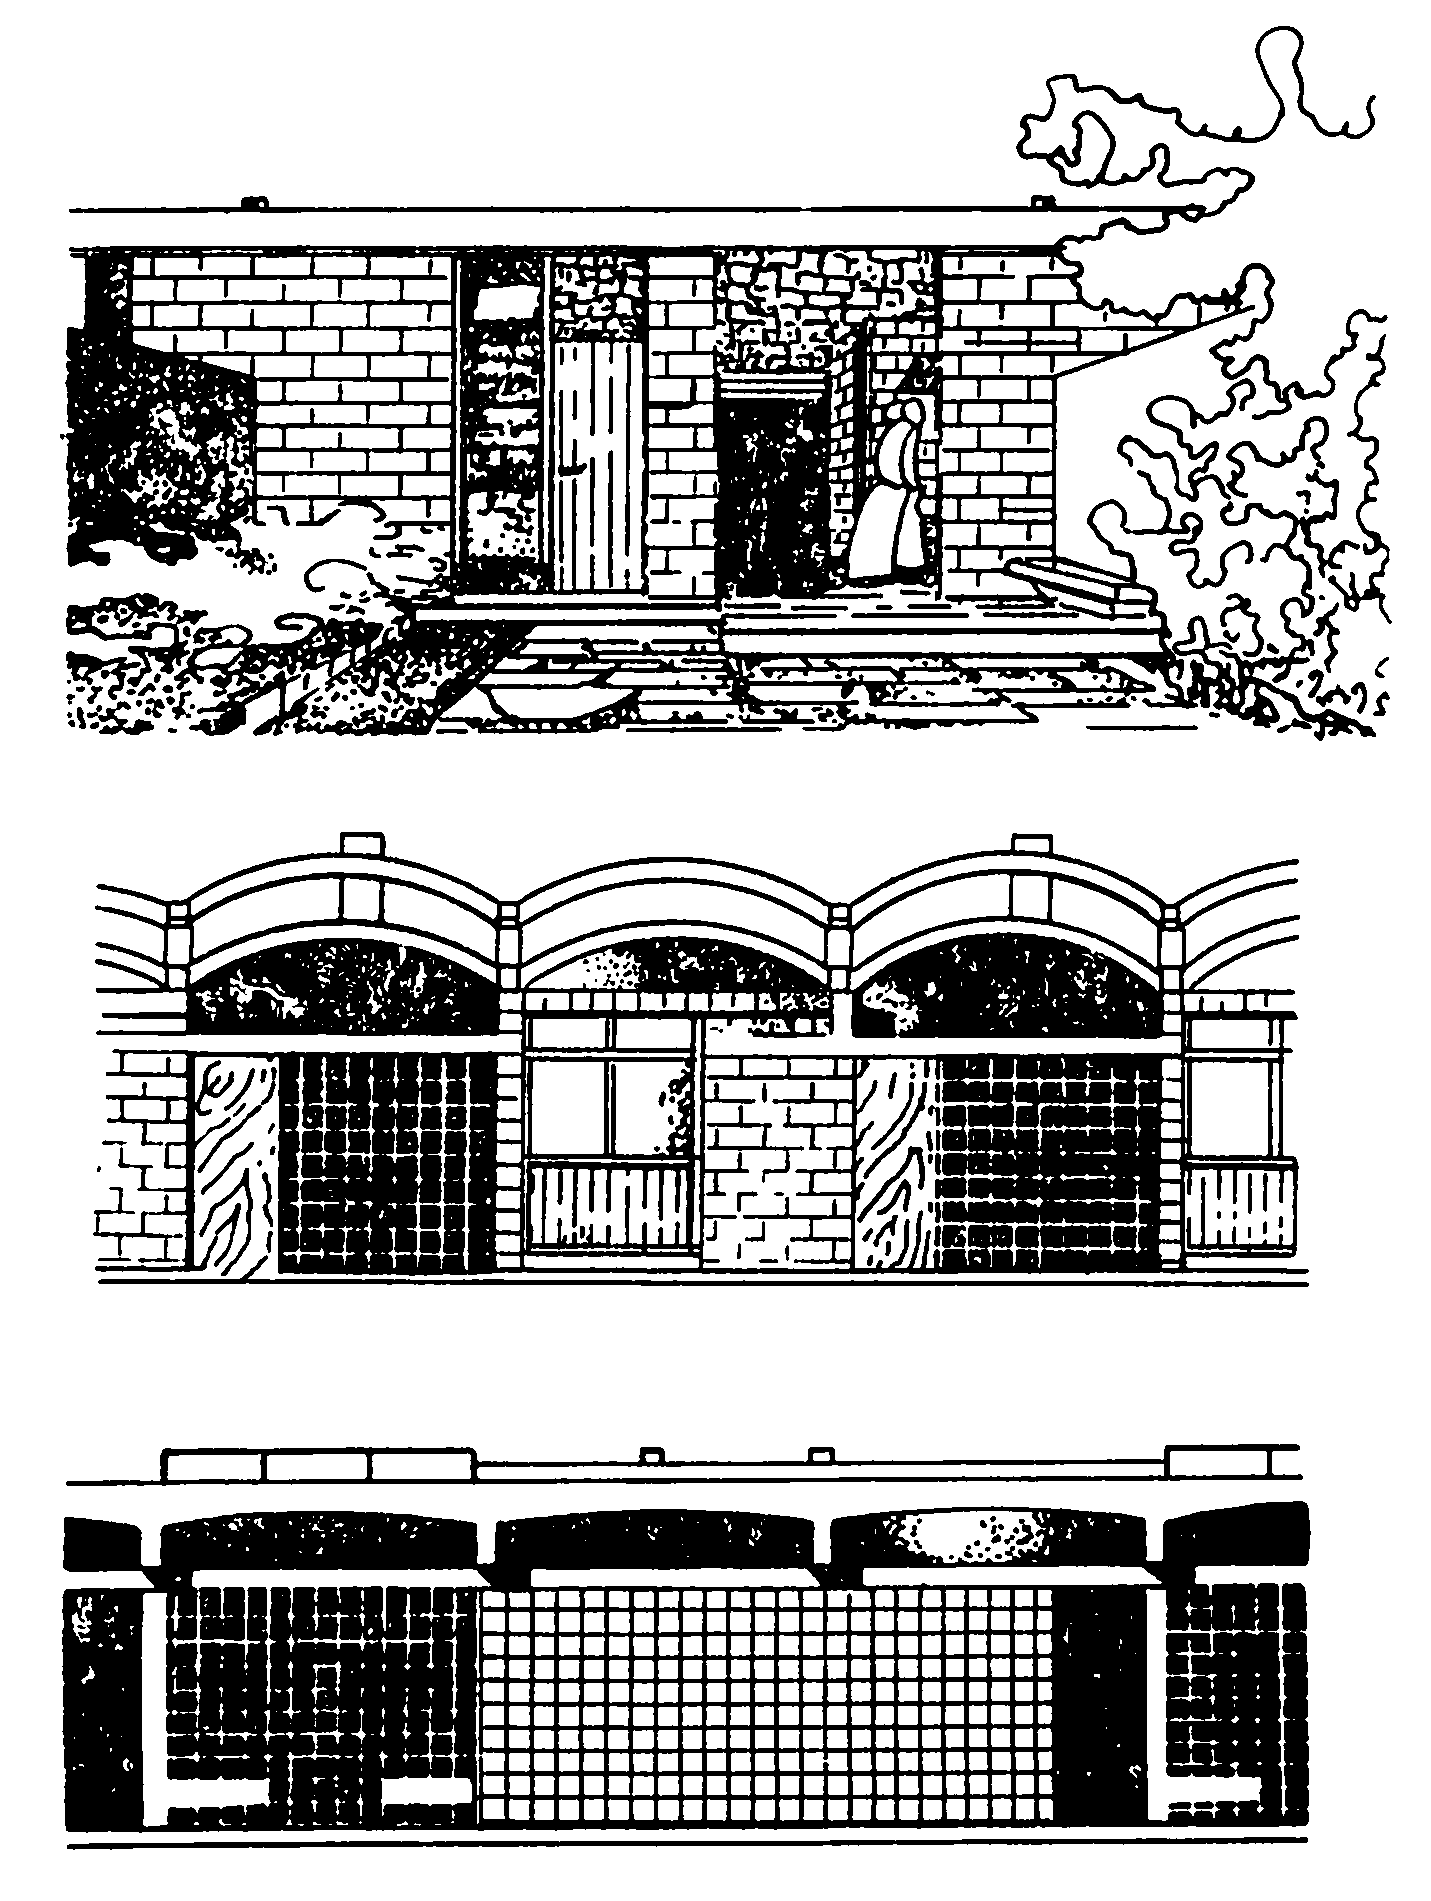 11. Исламабад. Жилая застройка, 1964 г. Общий вид, планы и фасады жилых домов